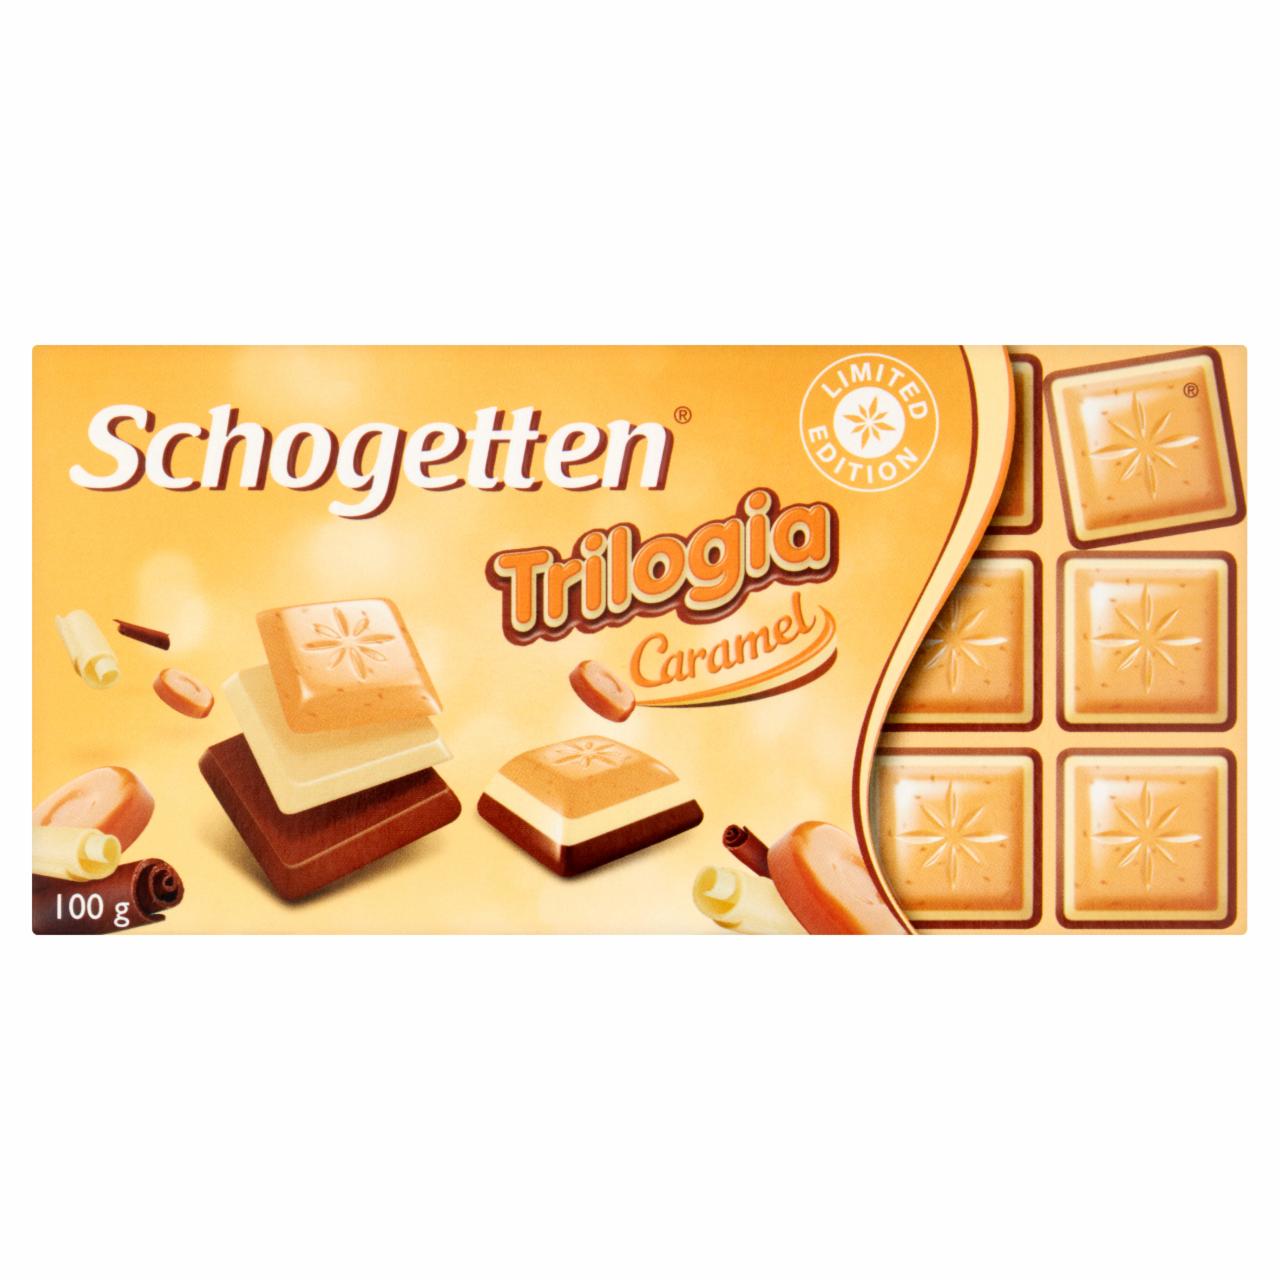 Zdjęcia - Schogetten Trilogia Caramel Biała czekolada 100 g